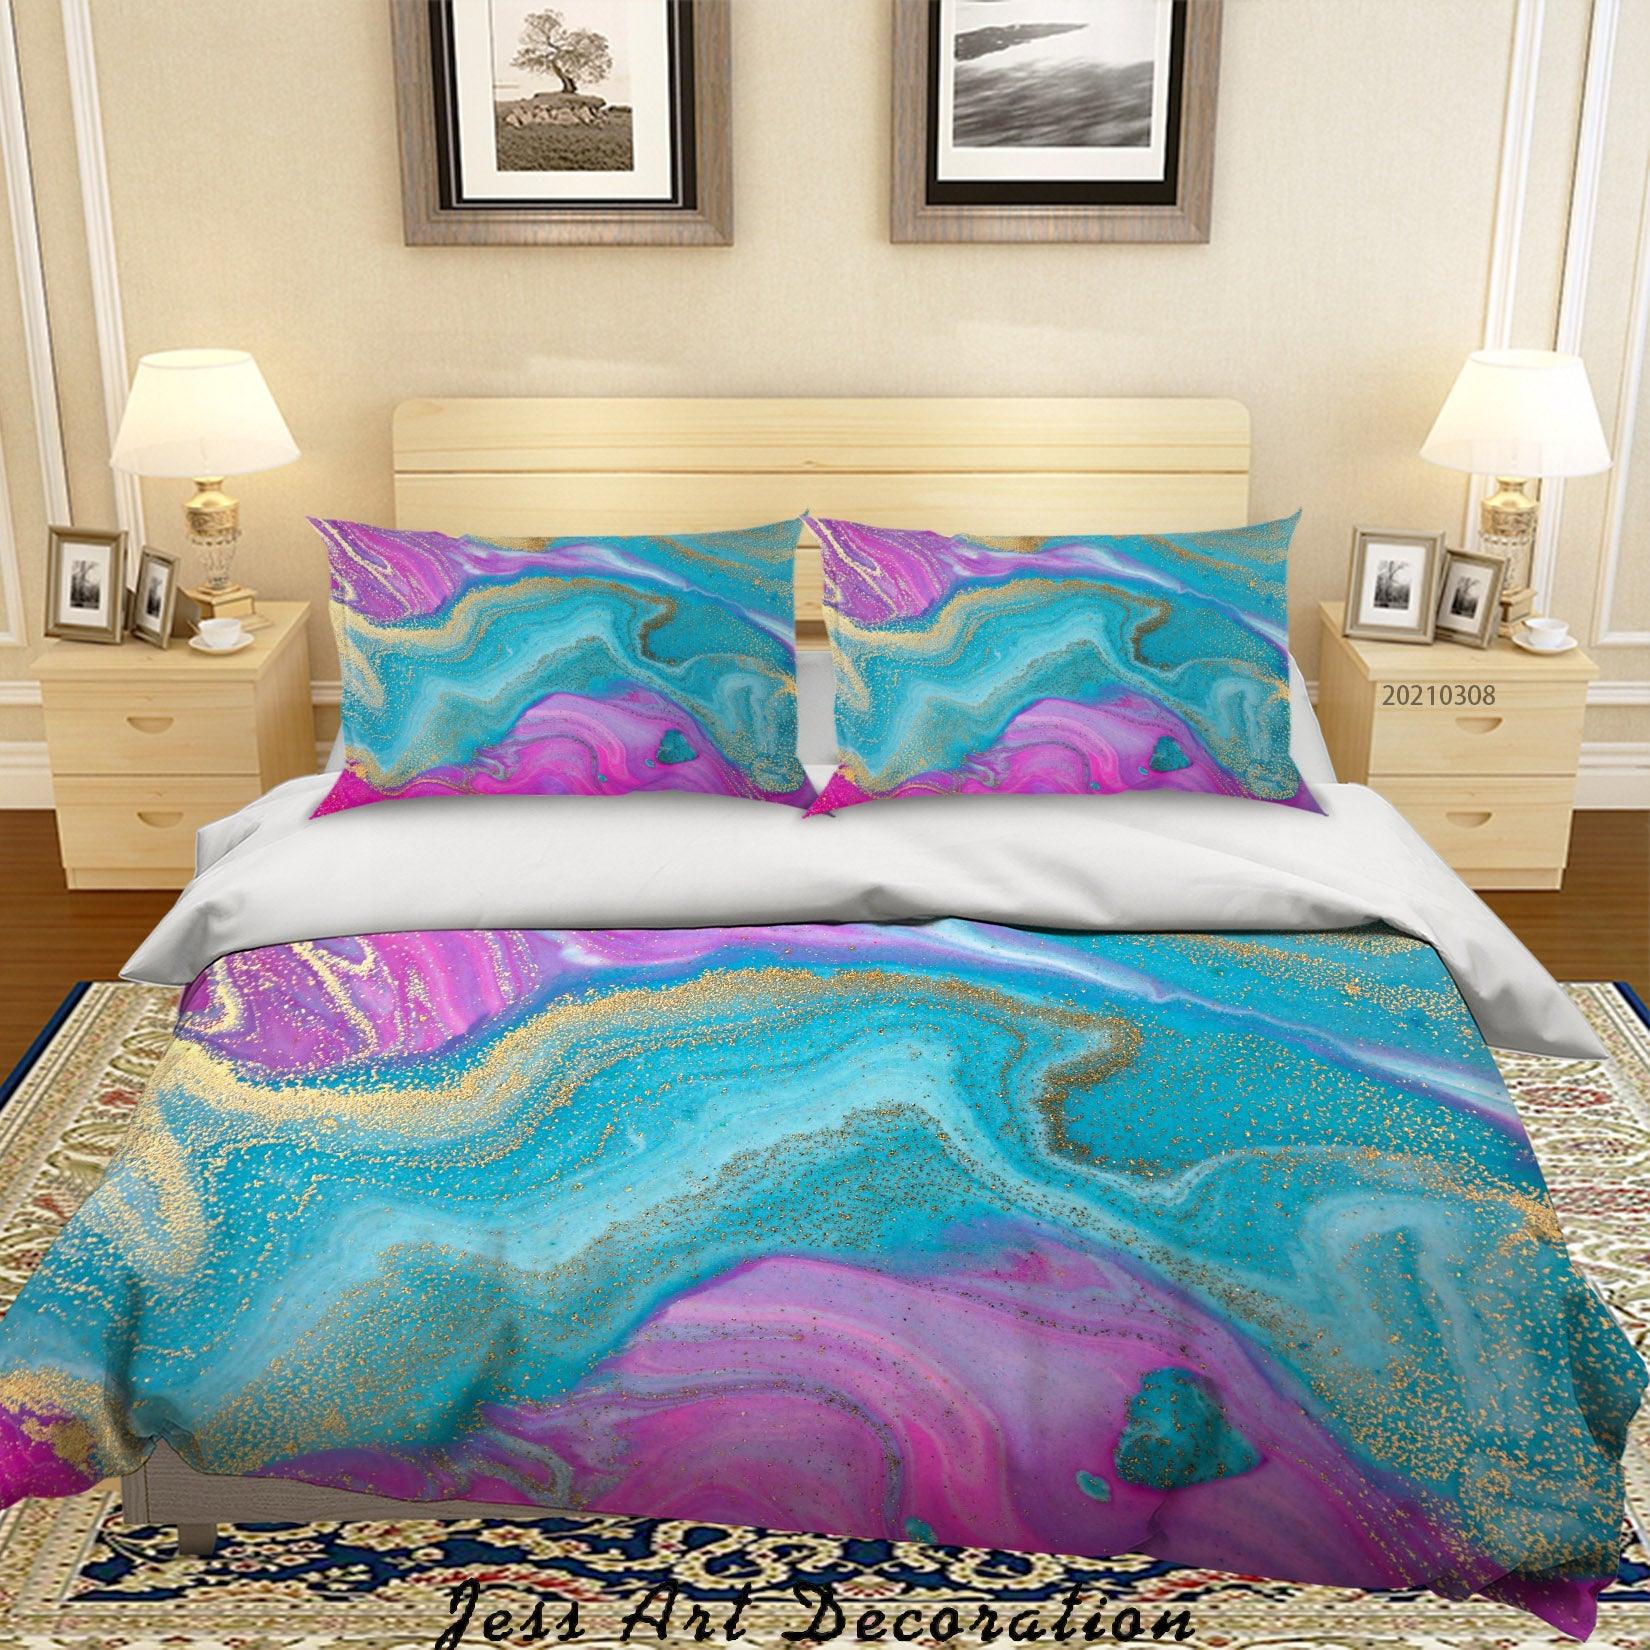 3D Watercolor Color Marble Quilt Cover Set Bedding Set Duvet Cover Pillowcases 276- Jess Art Decoration